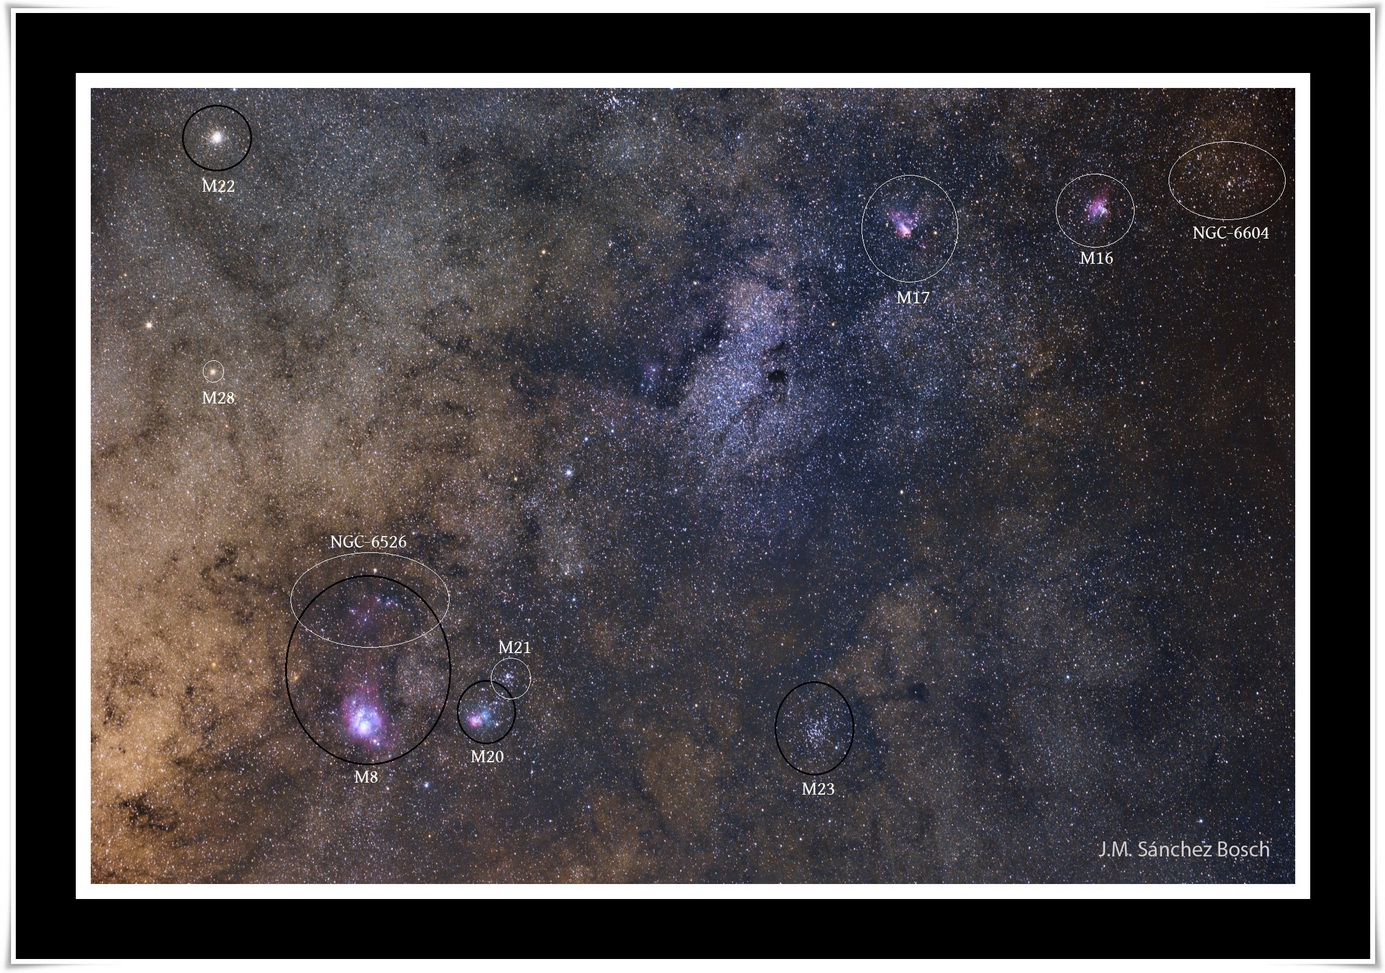 Objectes Messier a la Via Làctia. Fotografia de José Manuel Sánchez Bosch